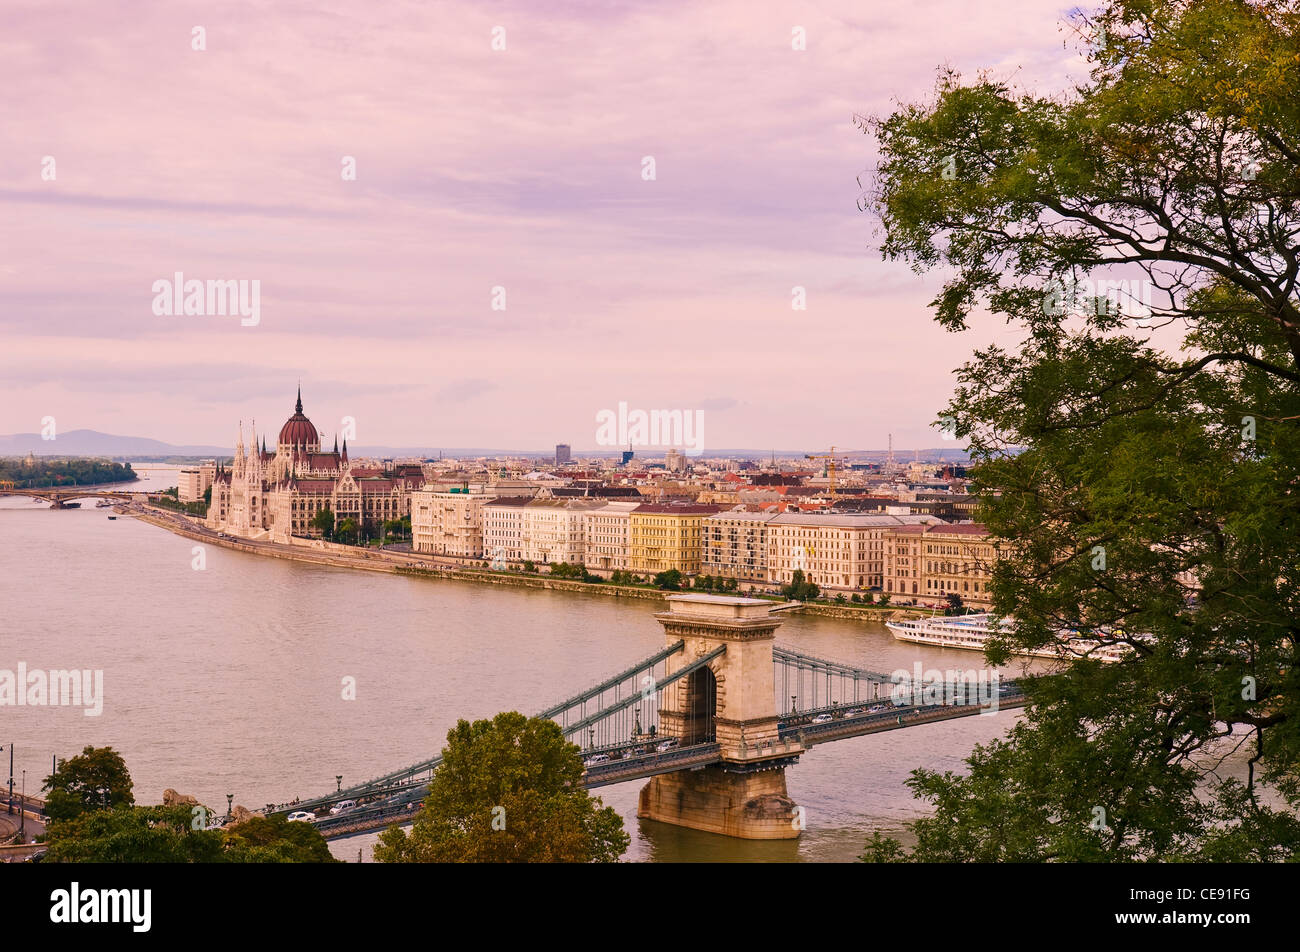 Vista dalla collina del castello quartiere di Pest e fiume Danubio tra cui il Parlamento europeo e il Ponte della Catena, Budapest, Ungheria. Foto Stock